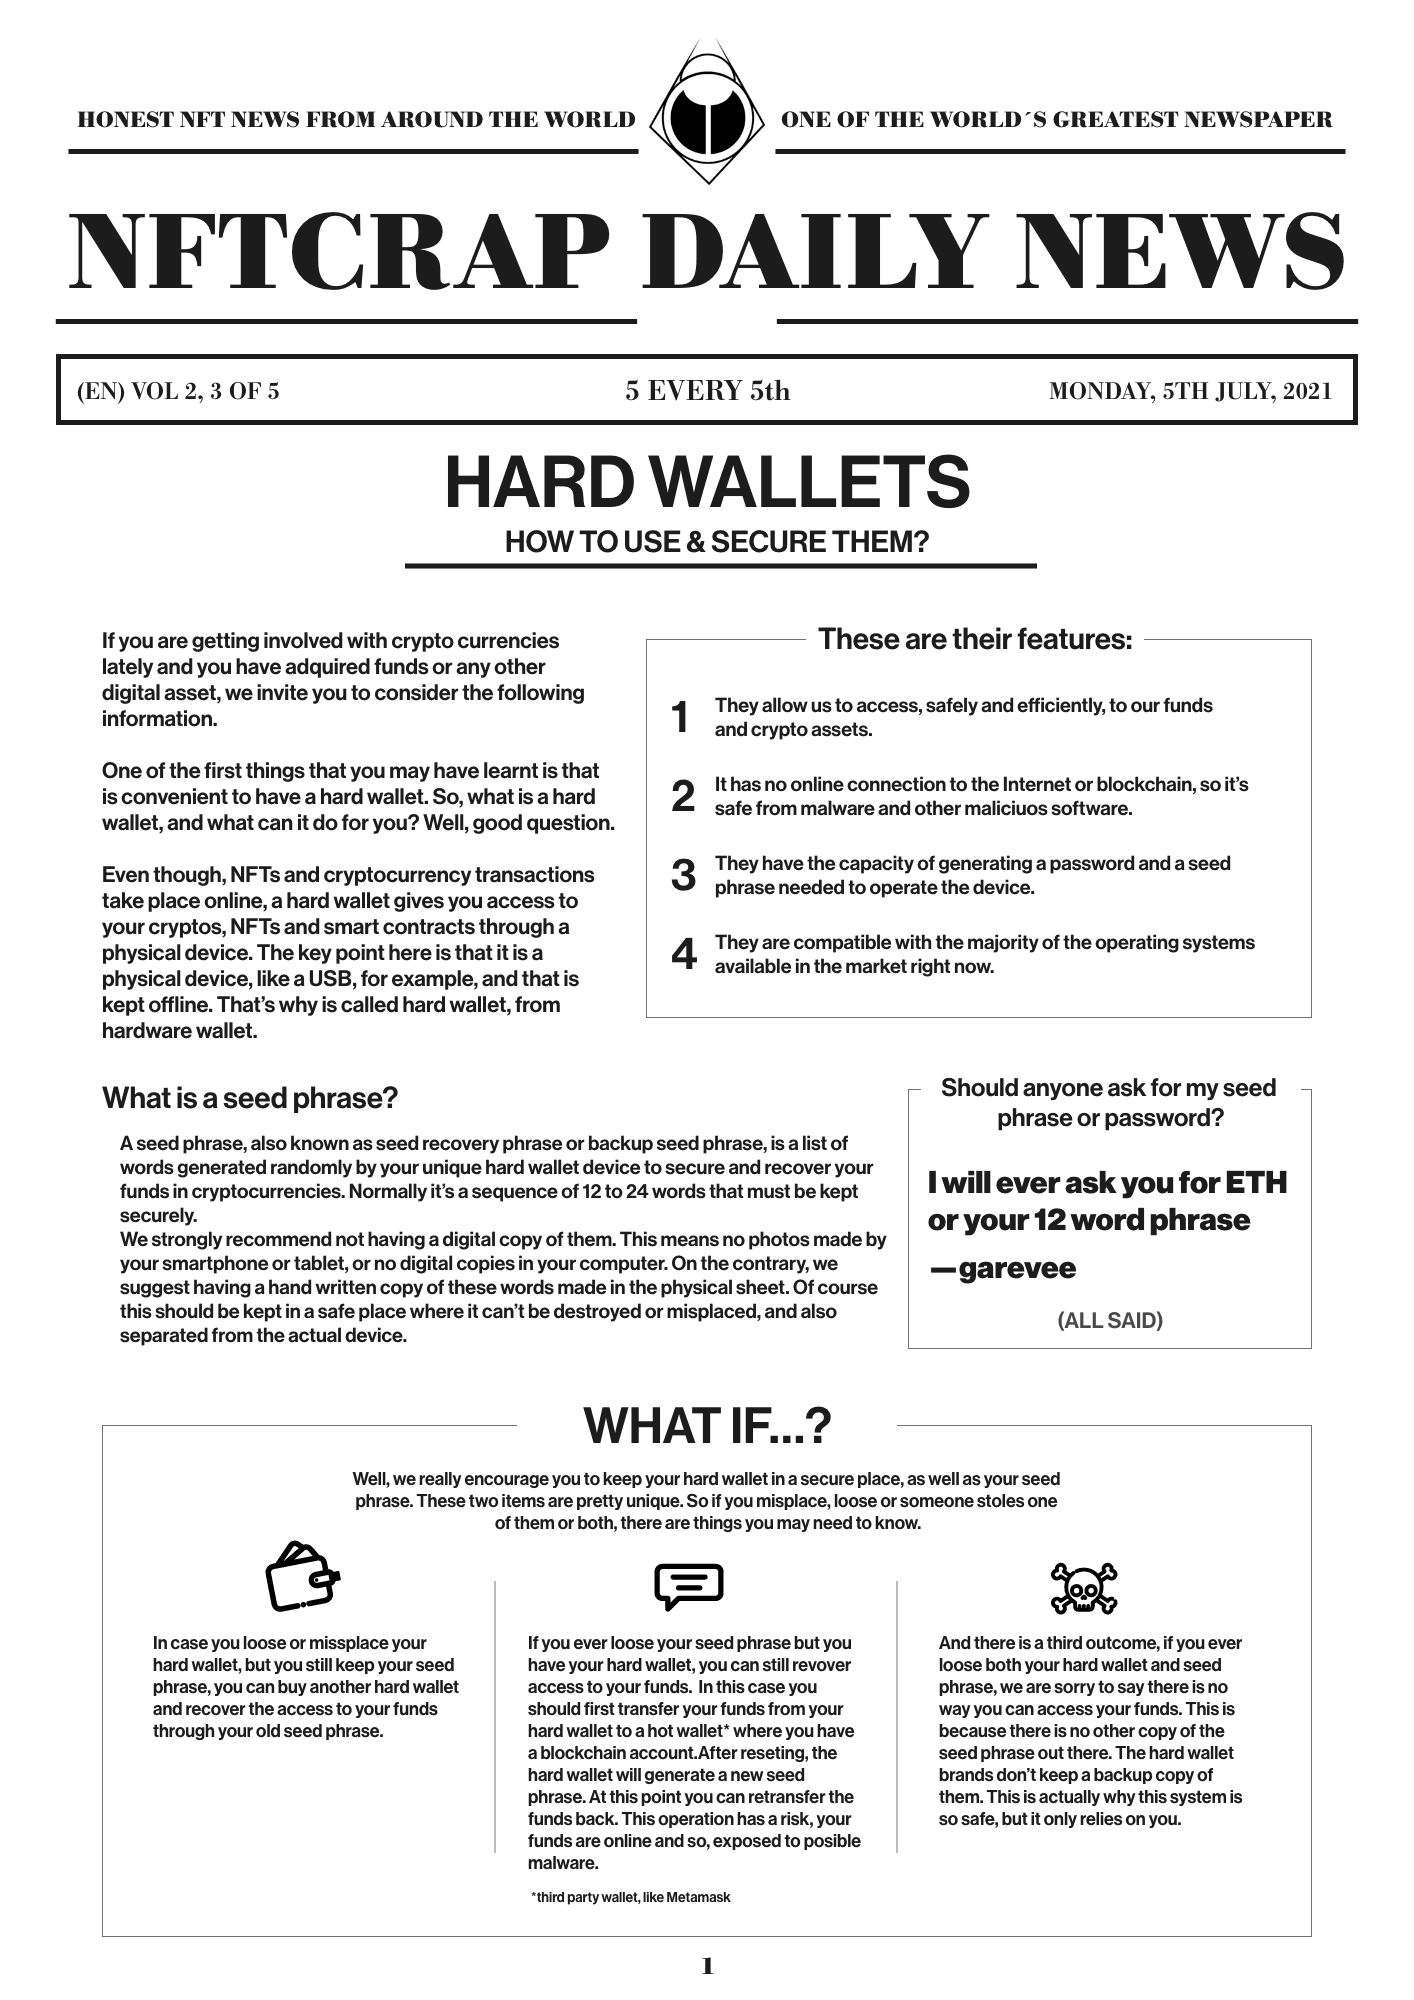 Hard Wallets (EN) #3/5